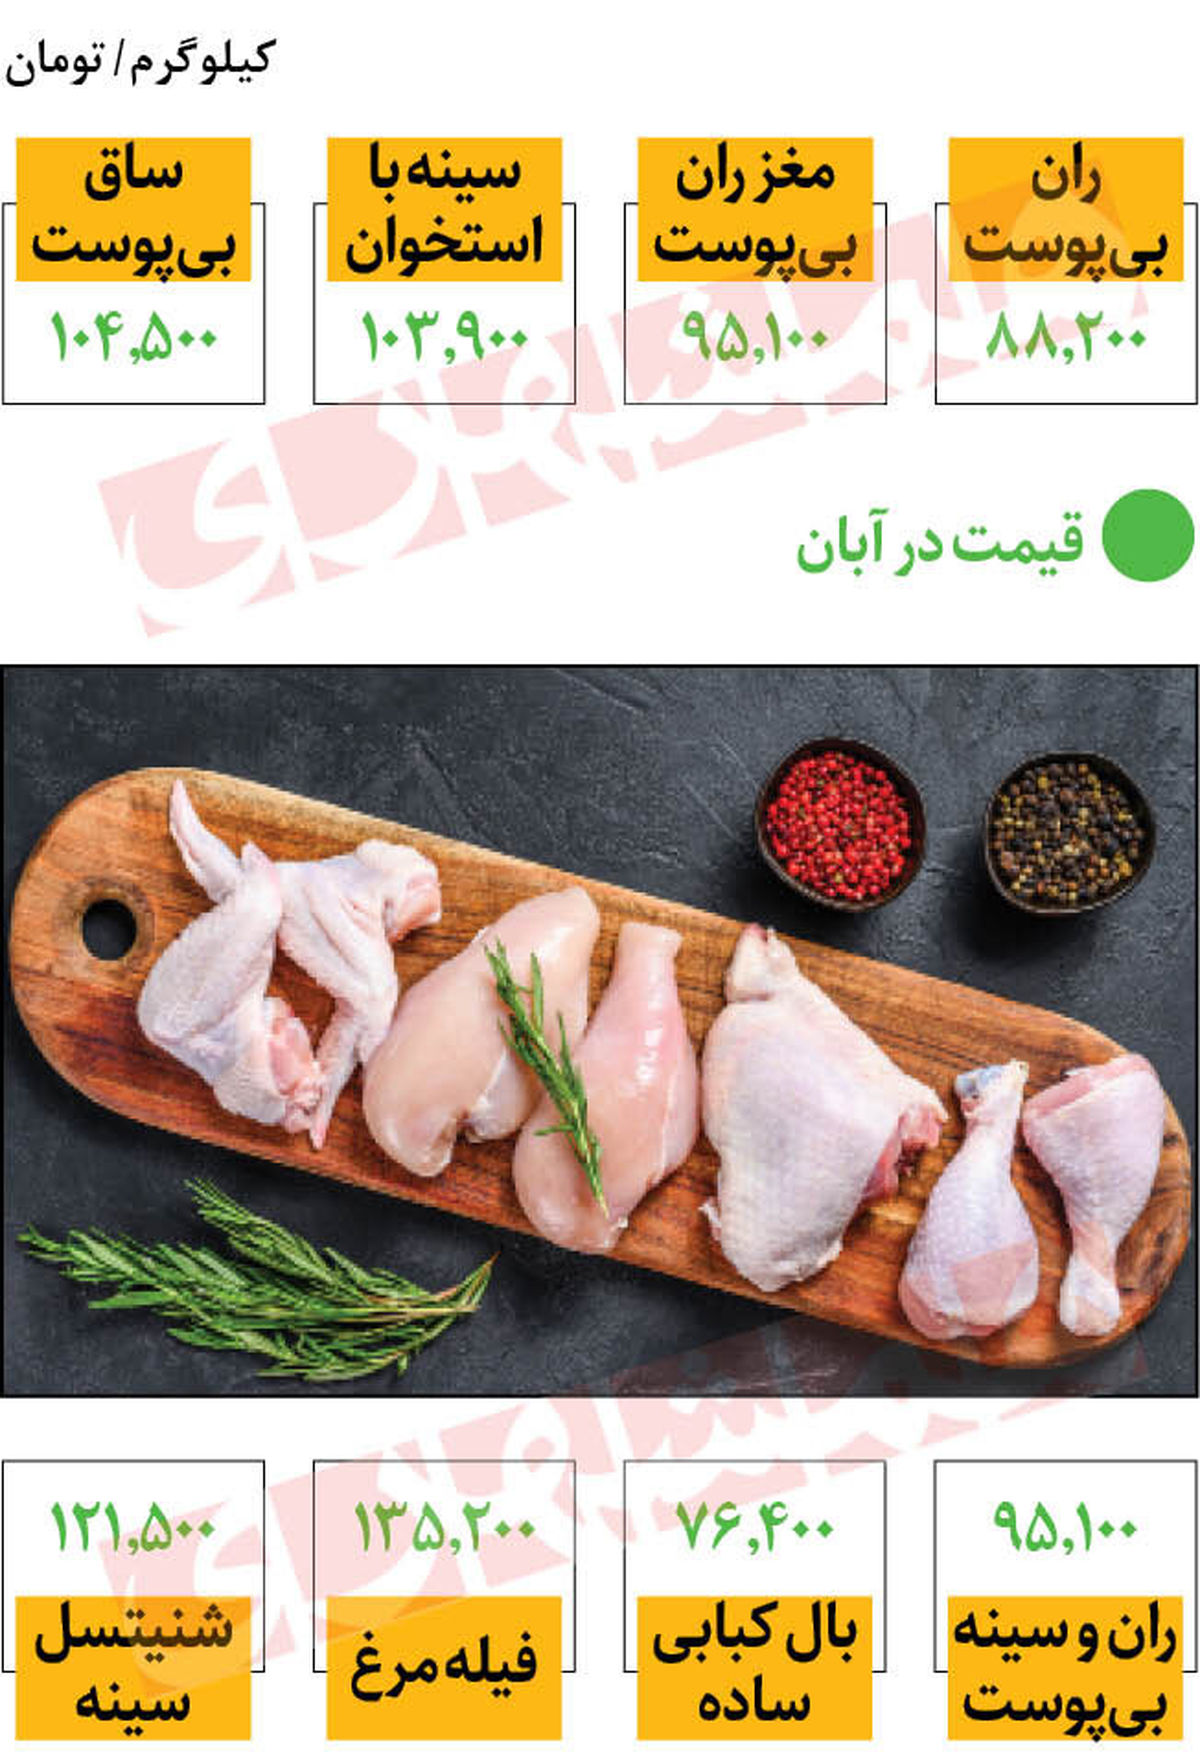 قیمت مرغ امروز 27 فروردین | قیمت مرغ گرم در بازار امروز 